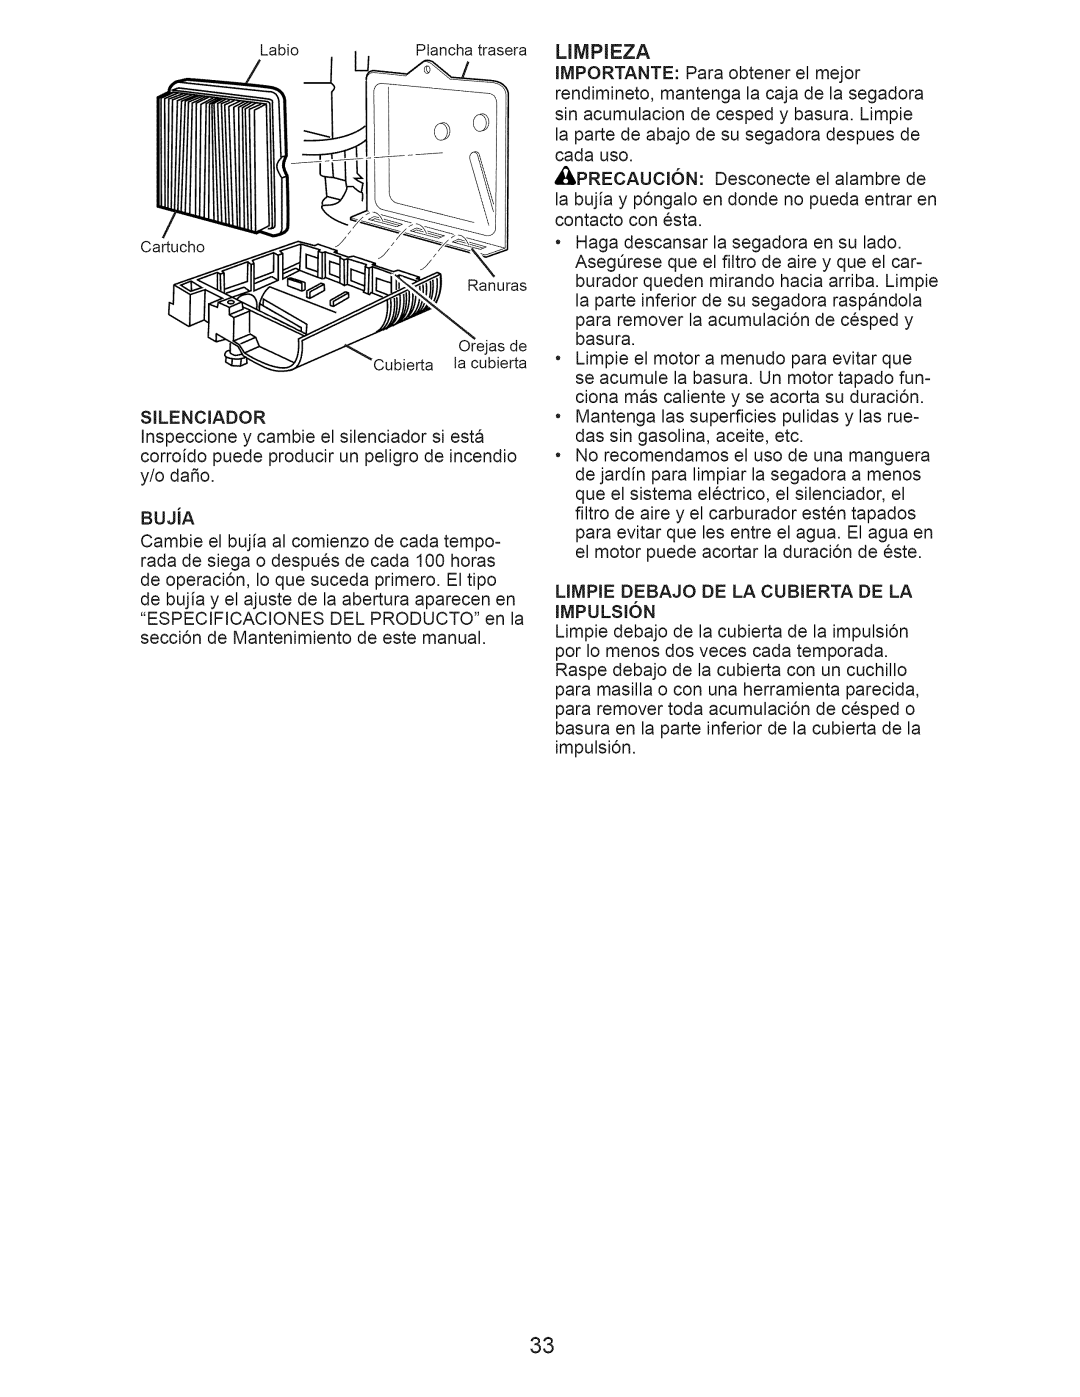 Craftsman 917.376403 manual Limpieza, LIMPIE DEBAJO DE LA CUBIERTA DE LA IMPULSI6N 